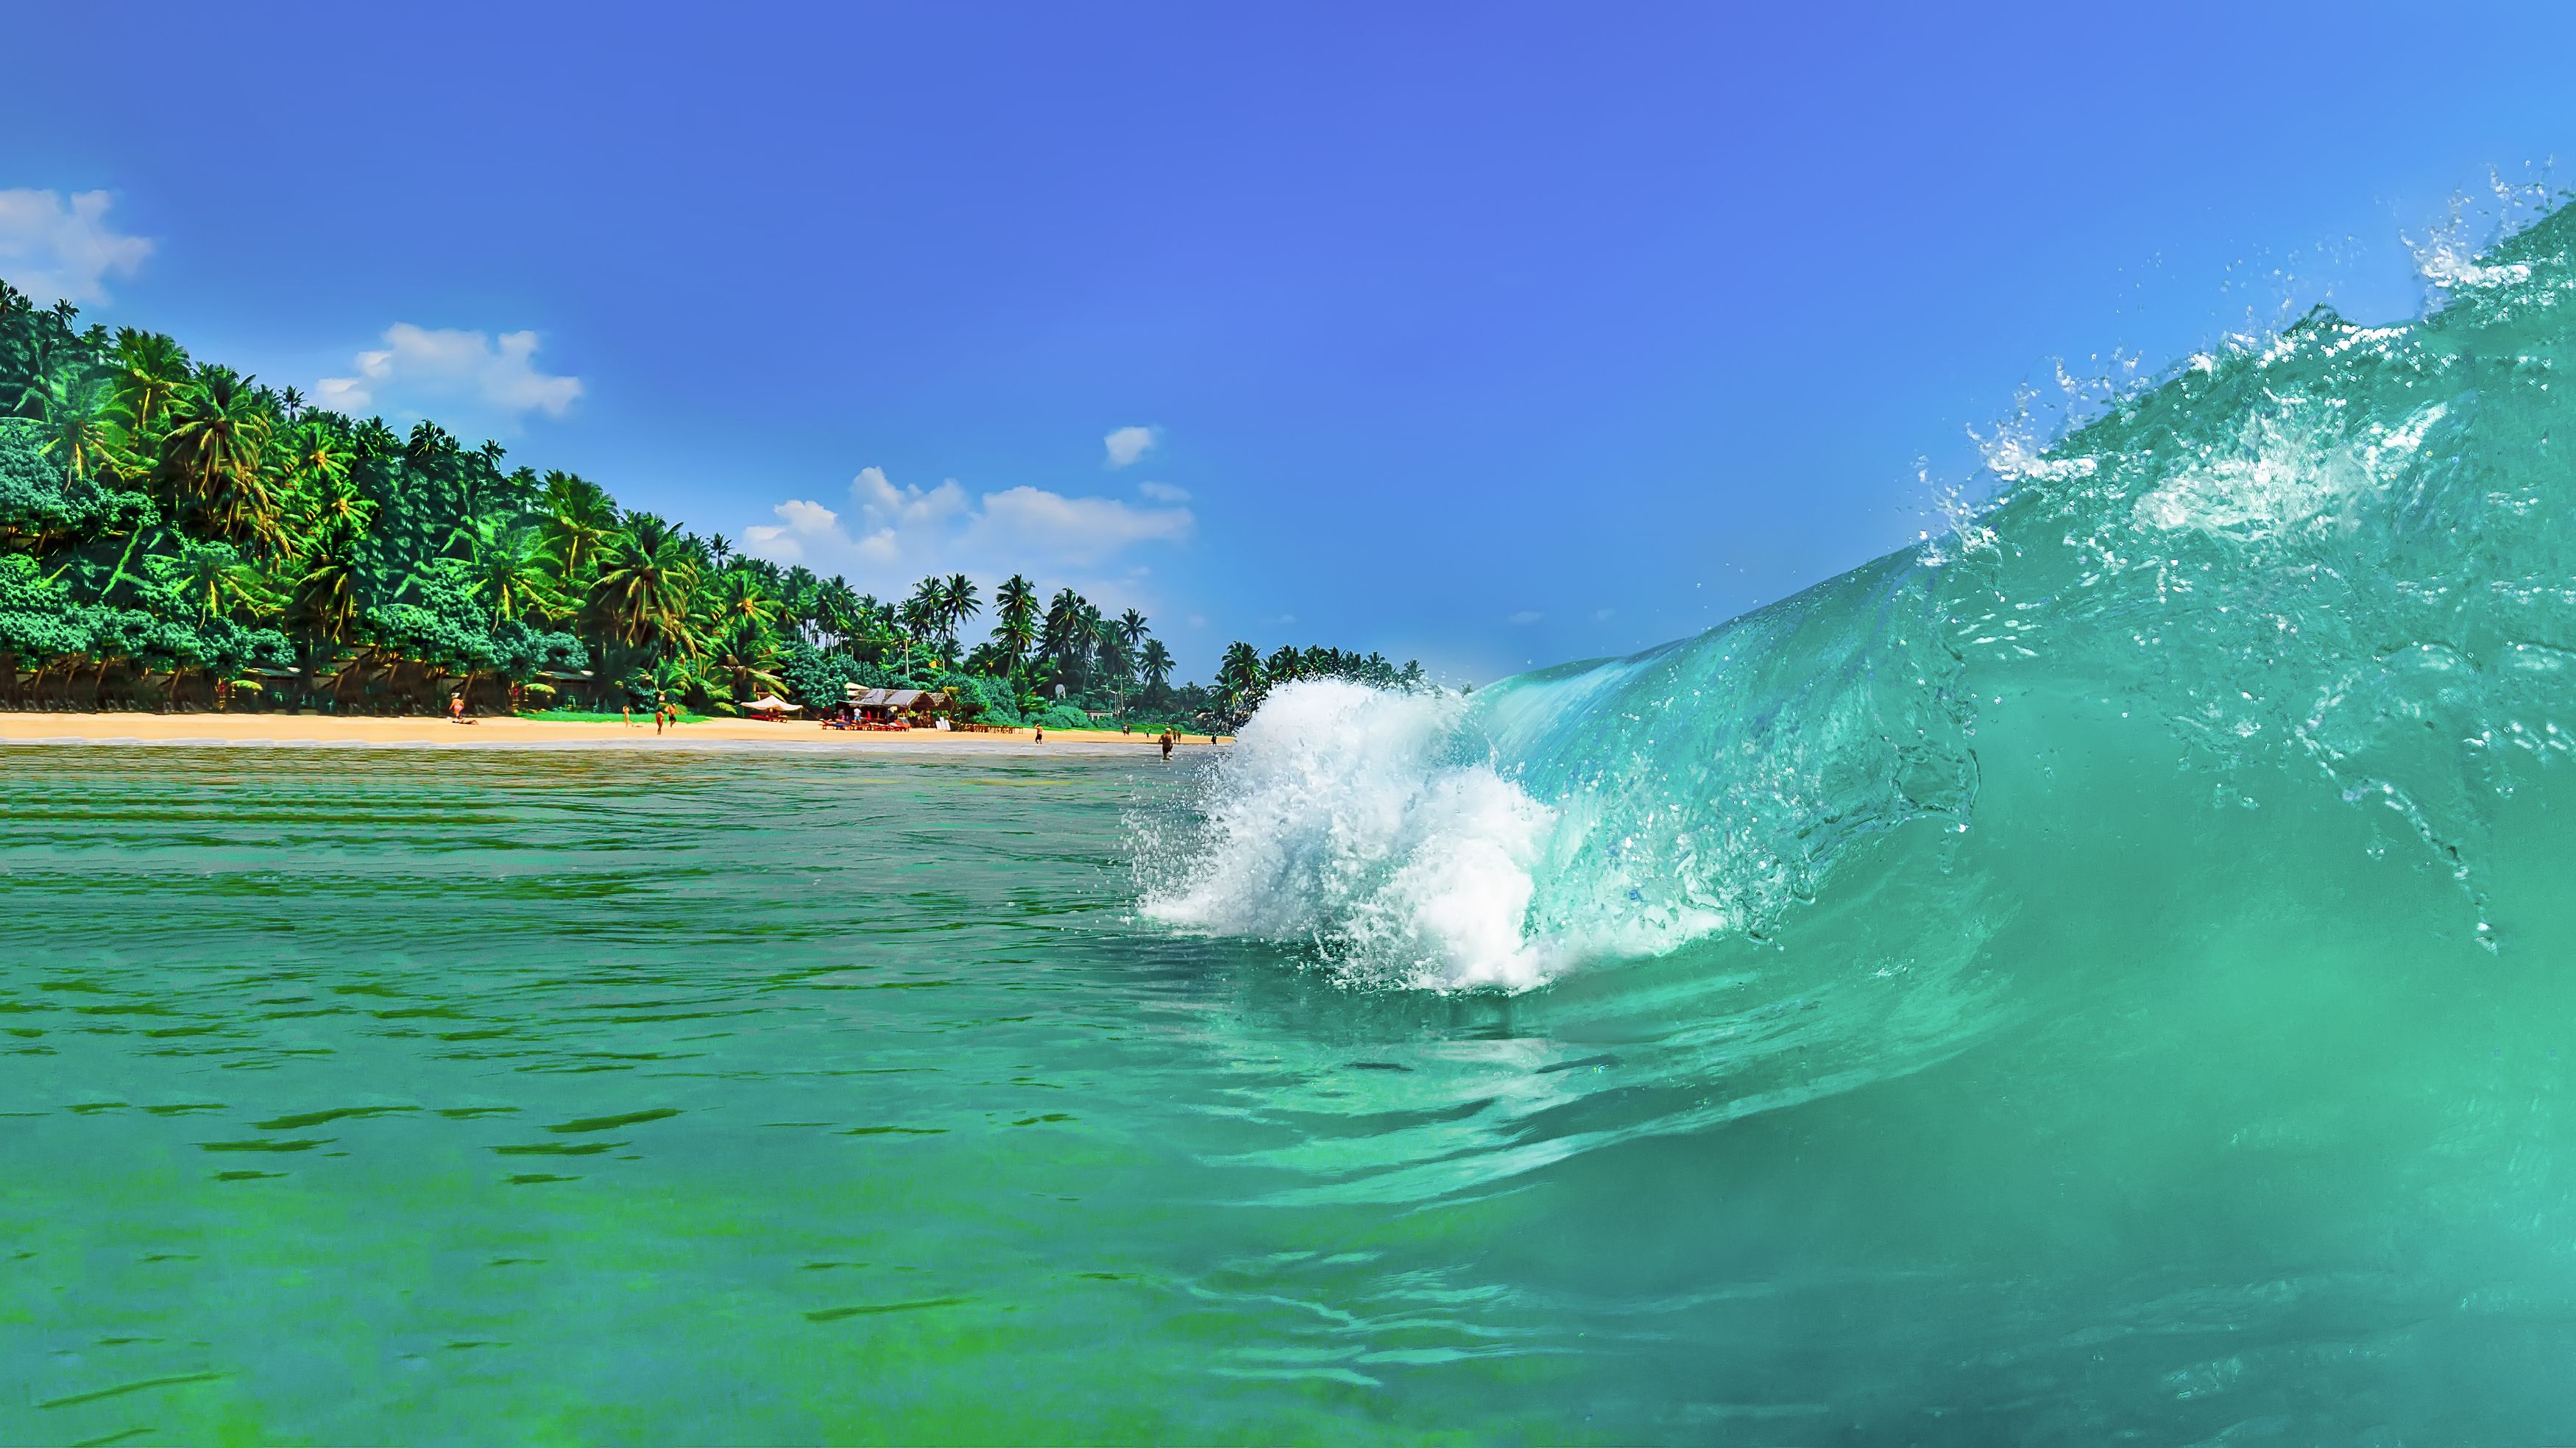 Индийский океан, волна, цейлон, лазурный, прозрачный, чистый, море, пляж, серфинг, отдых, пляжный, азия, юго-восток, шри-ланка, путешествие, тур, лето, жаркий, тропический, остров, джунгли, зелень, лес, Сытилин Павел